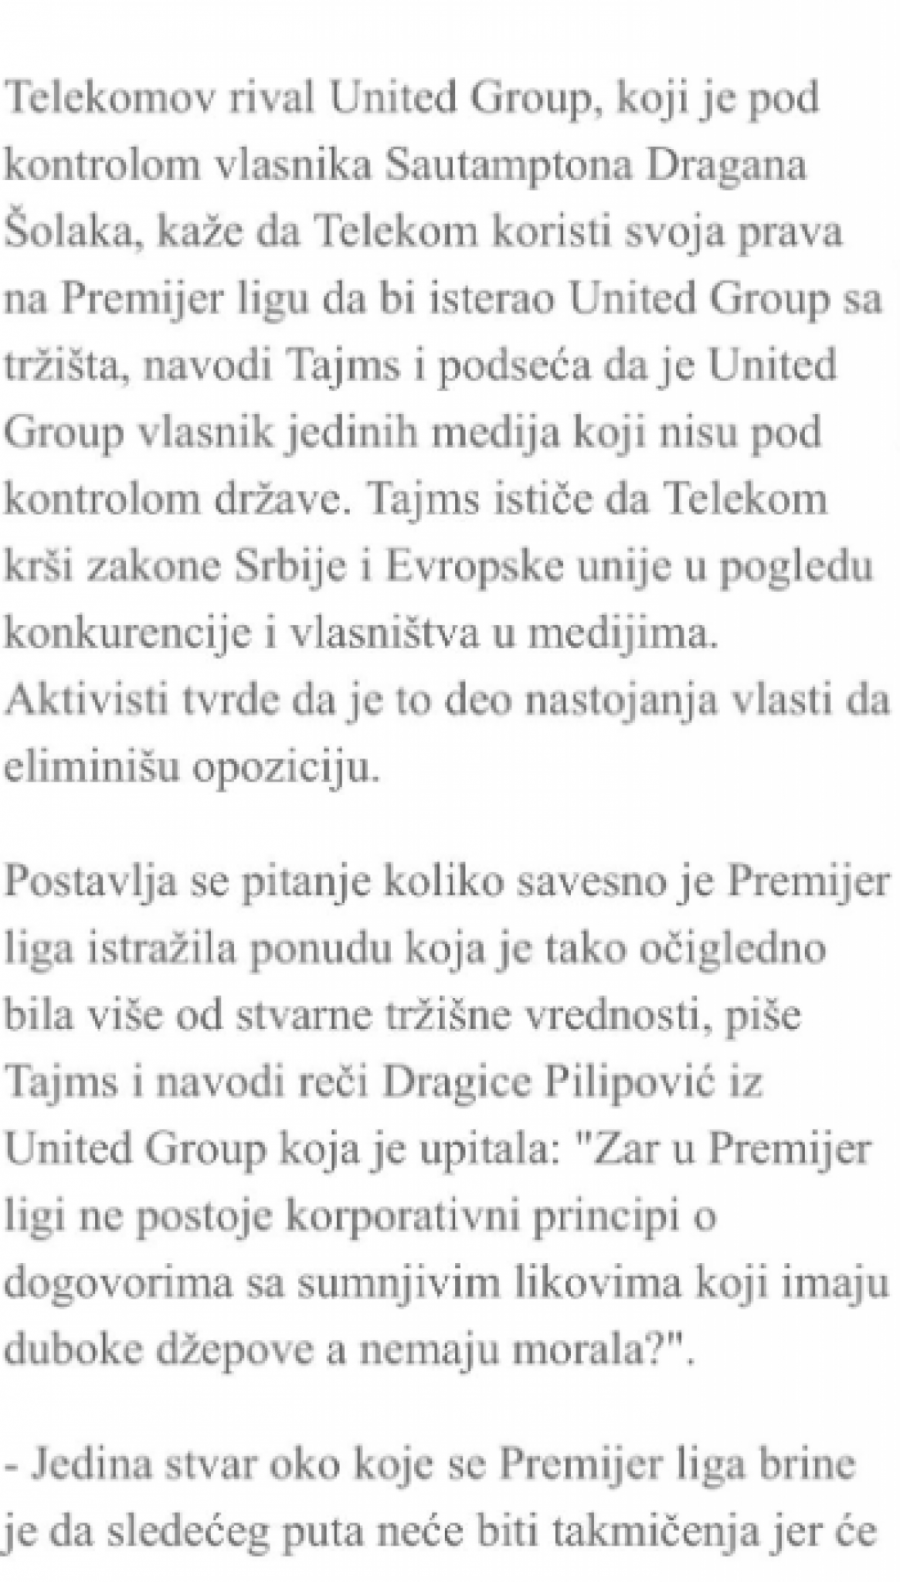 SKANDAL ŠOLAKOVIH MEDIJA! Optužili Srbiju za etničko čišćenje da bi uništili Telekom!